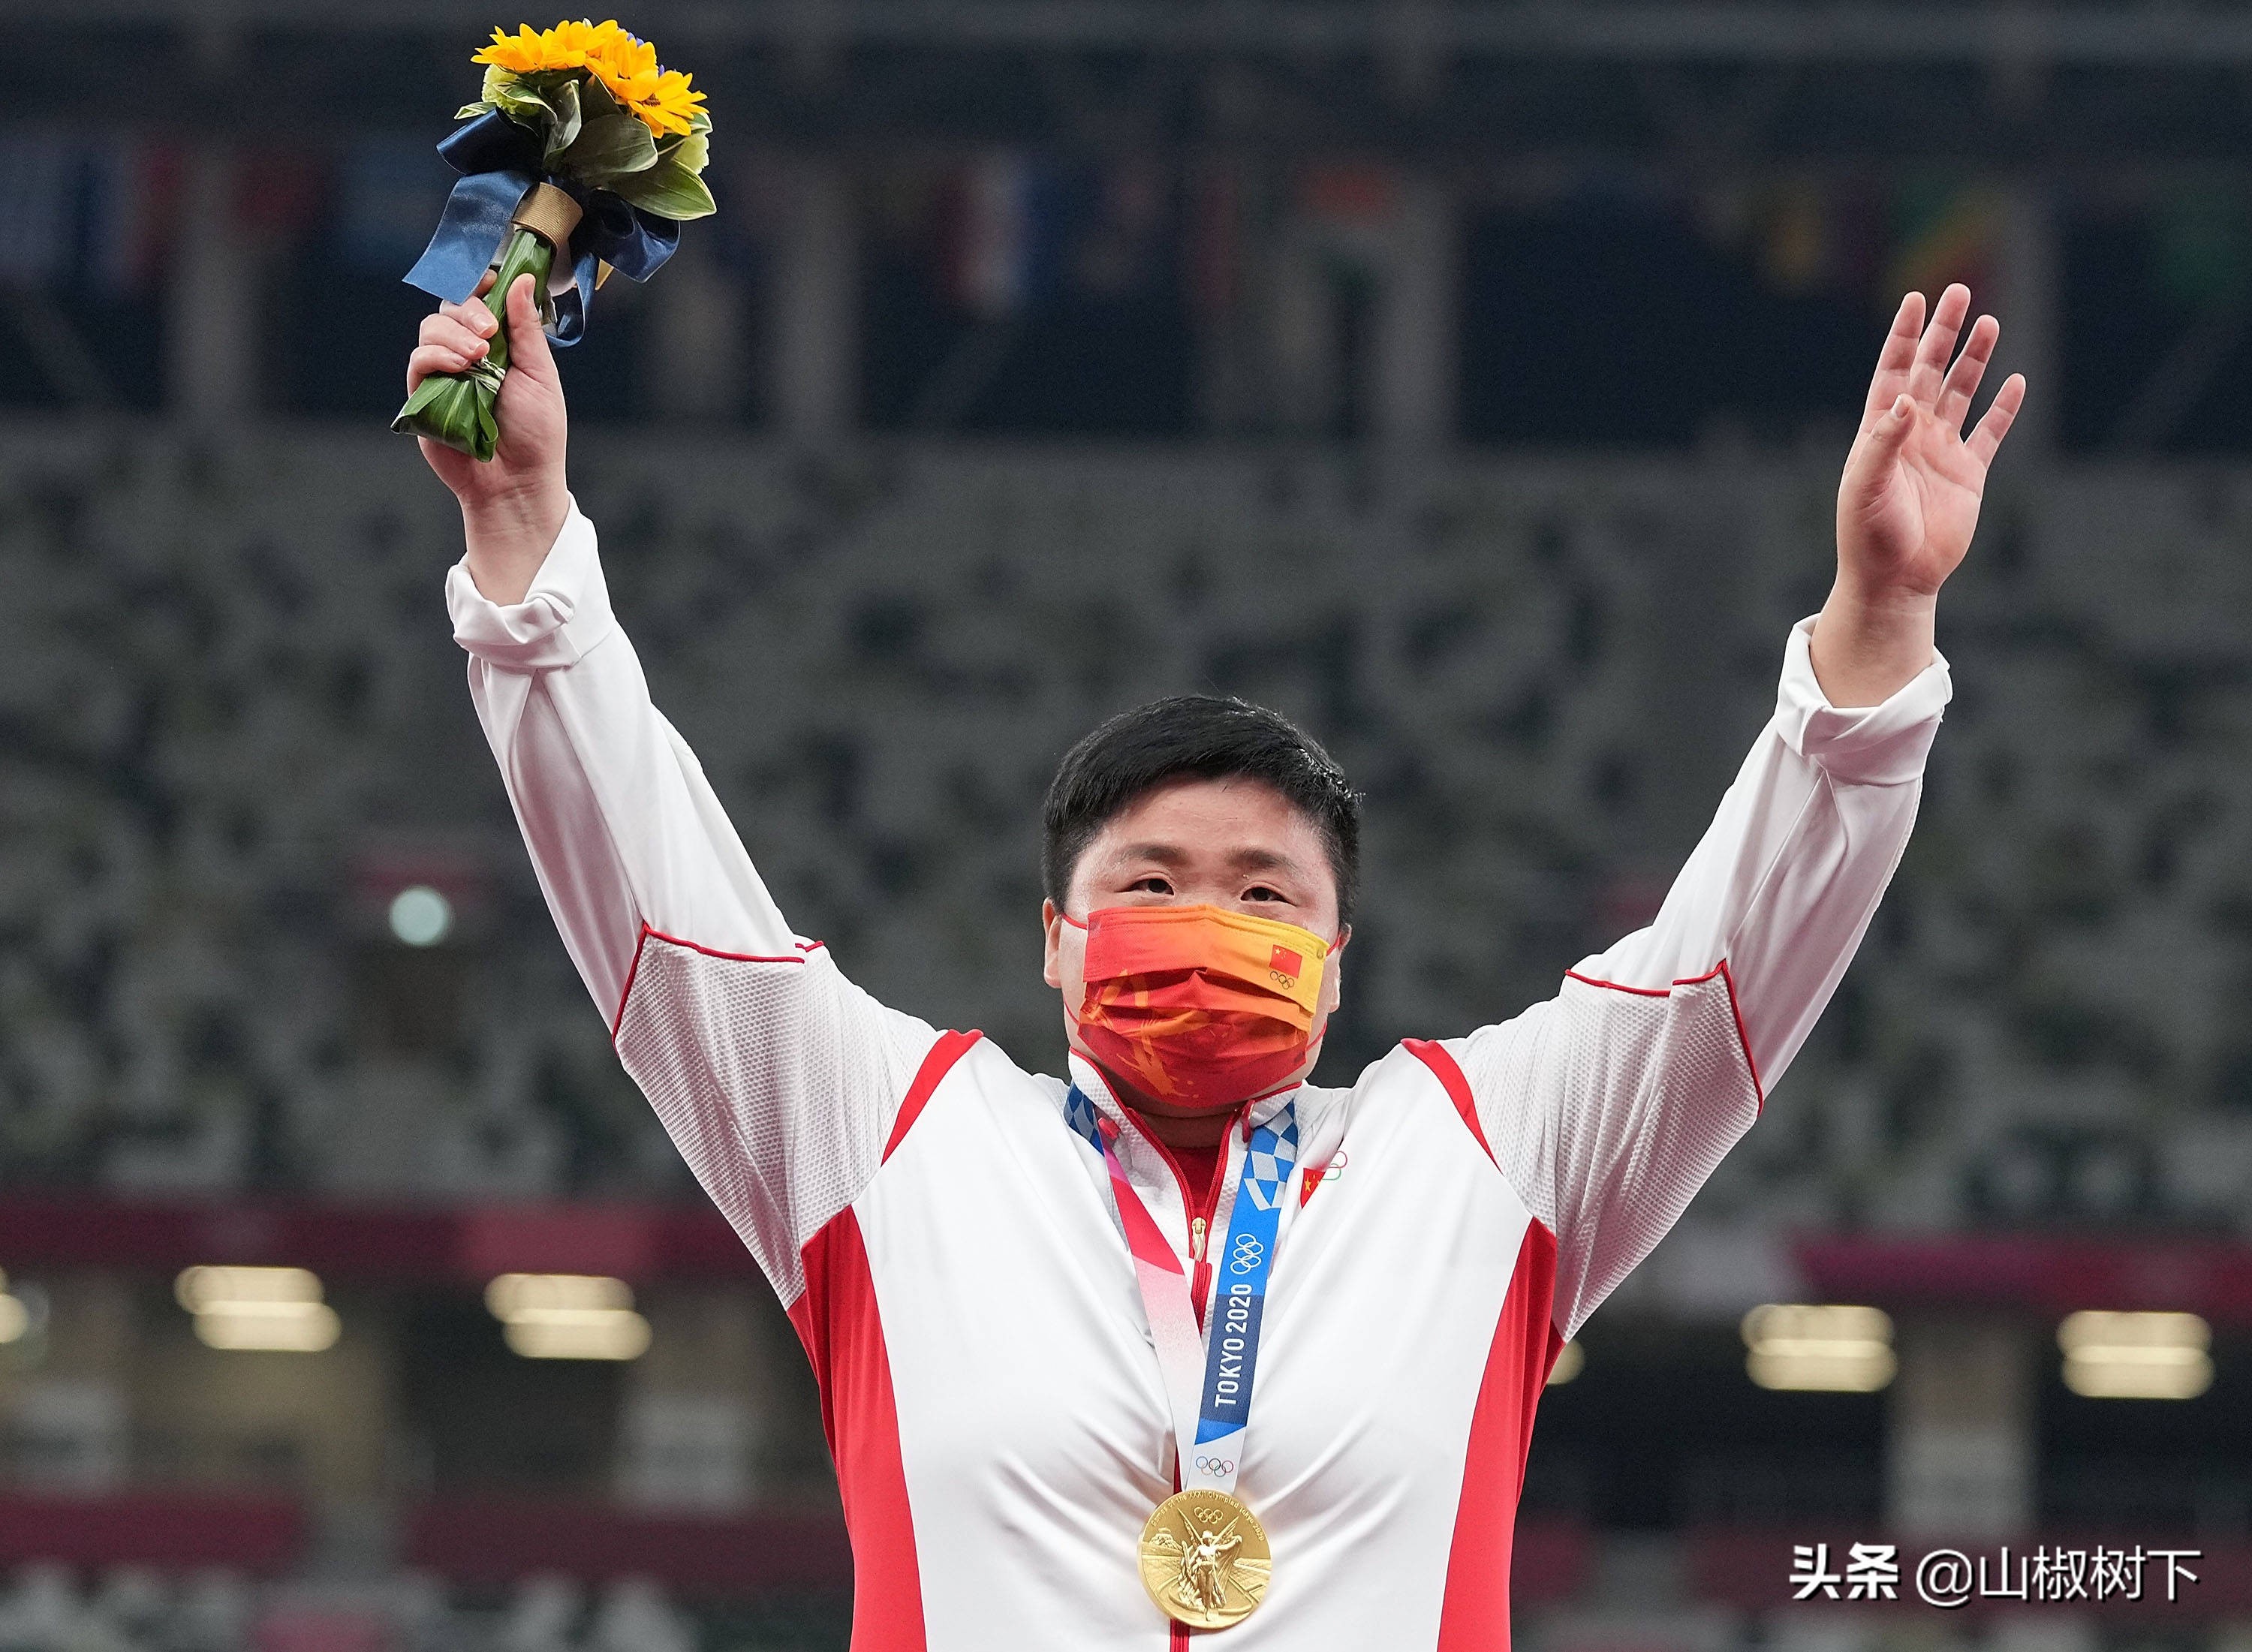 中国奥运会获奖图片